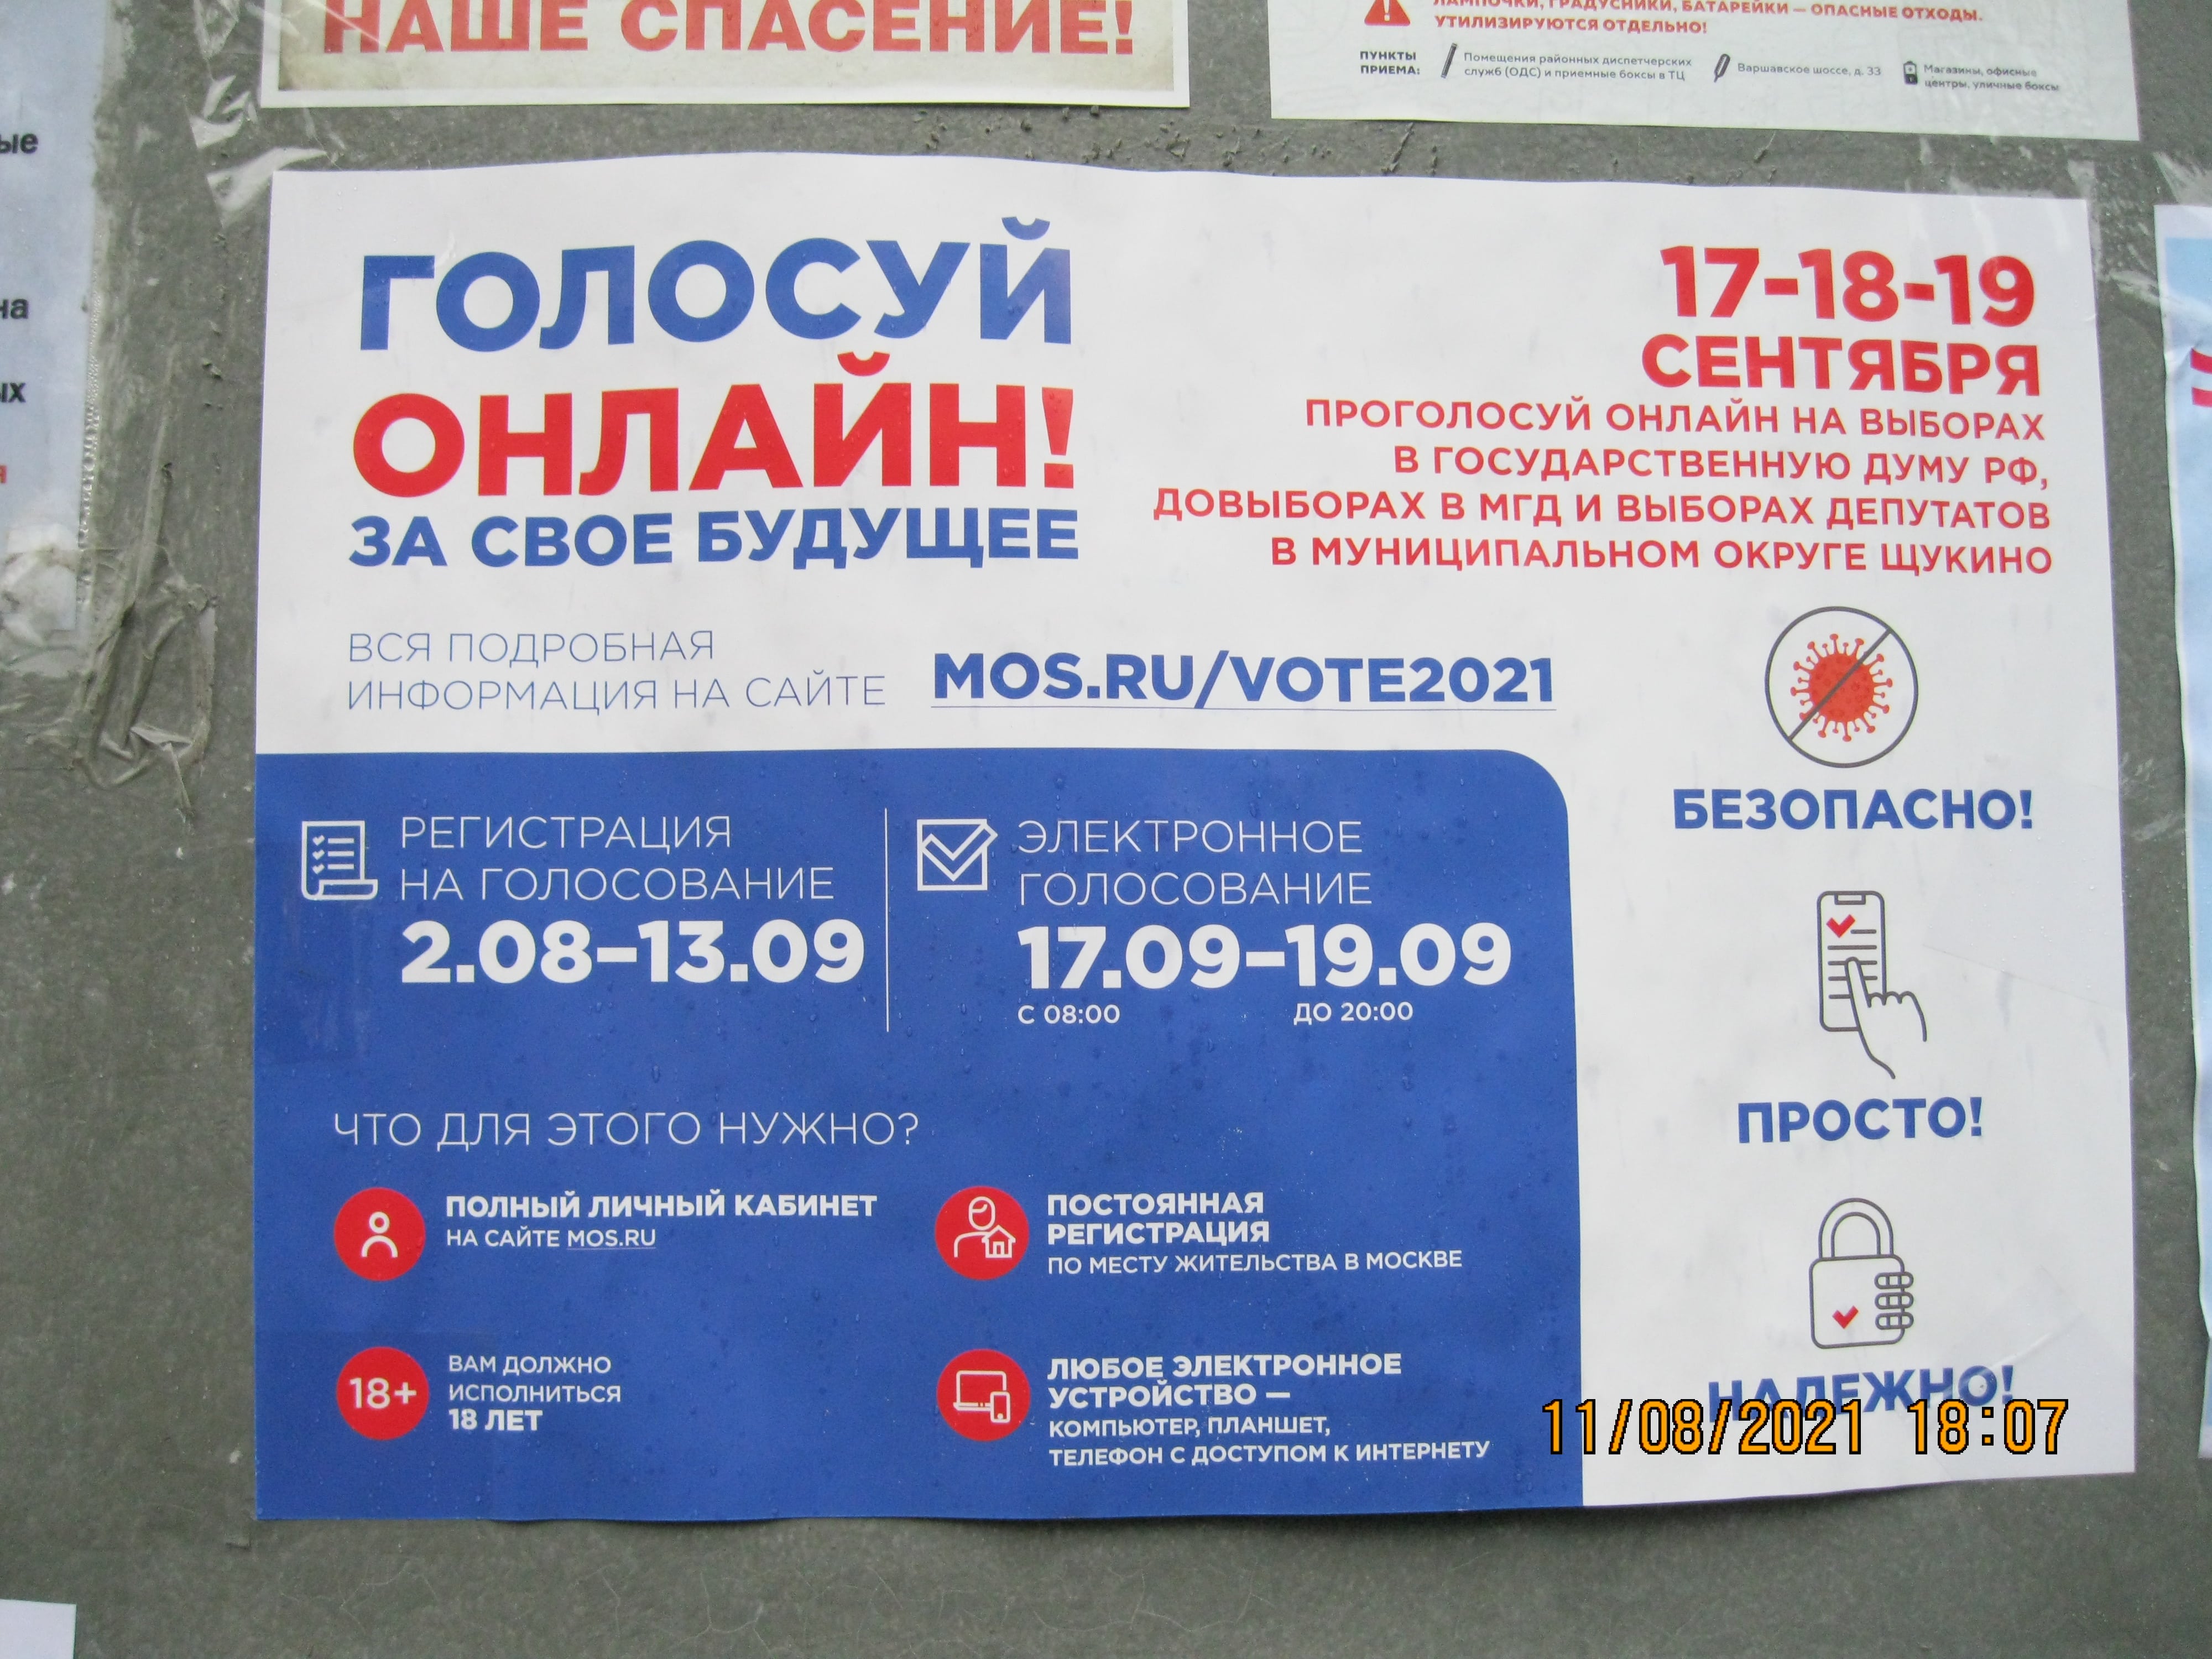 Всю Москву облепили призывами - агитацией голосовать на выборах в госдуму, в онлайн формате